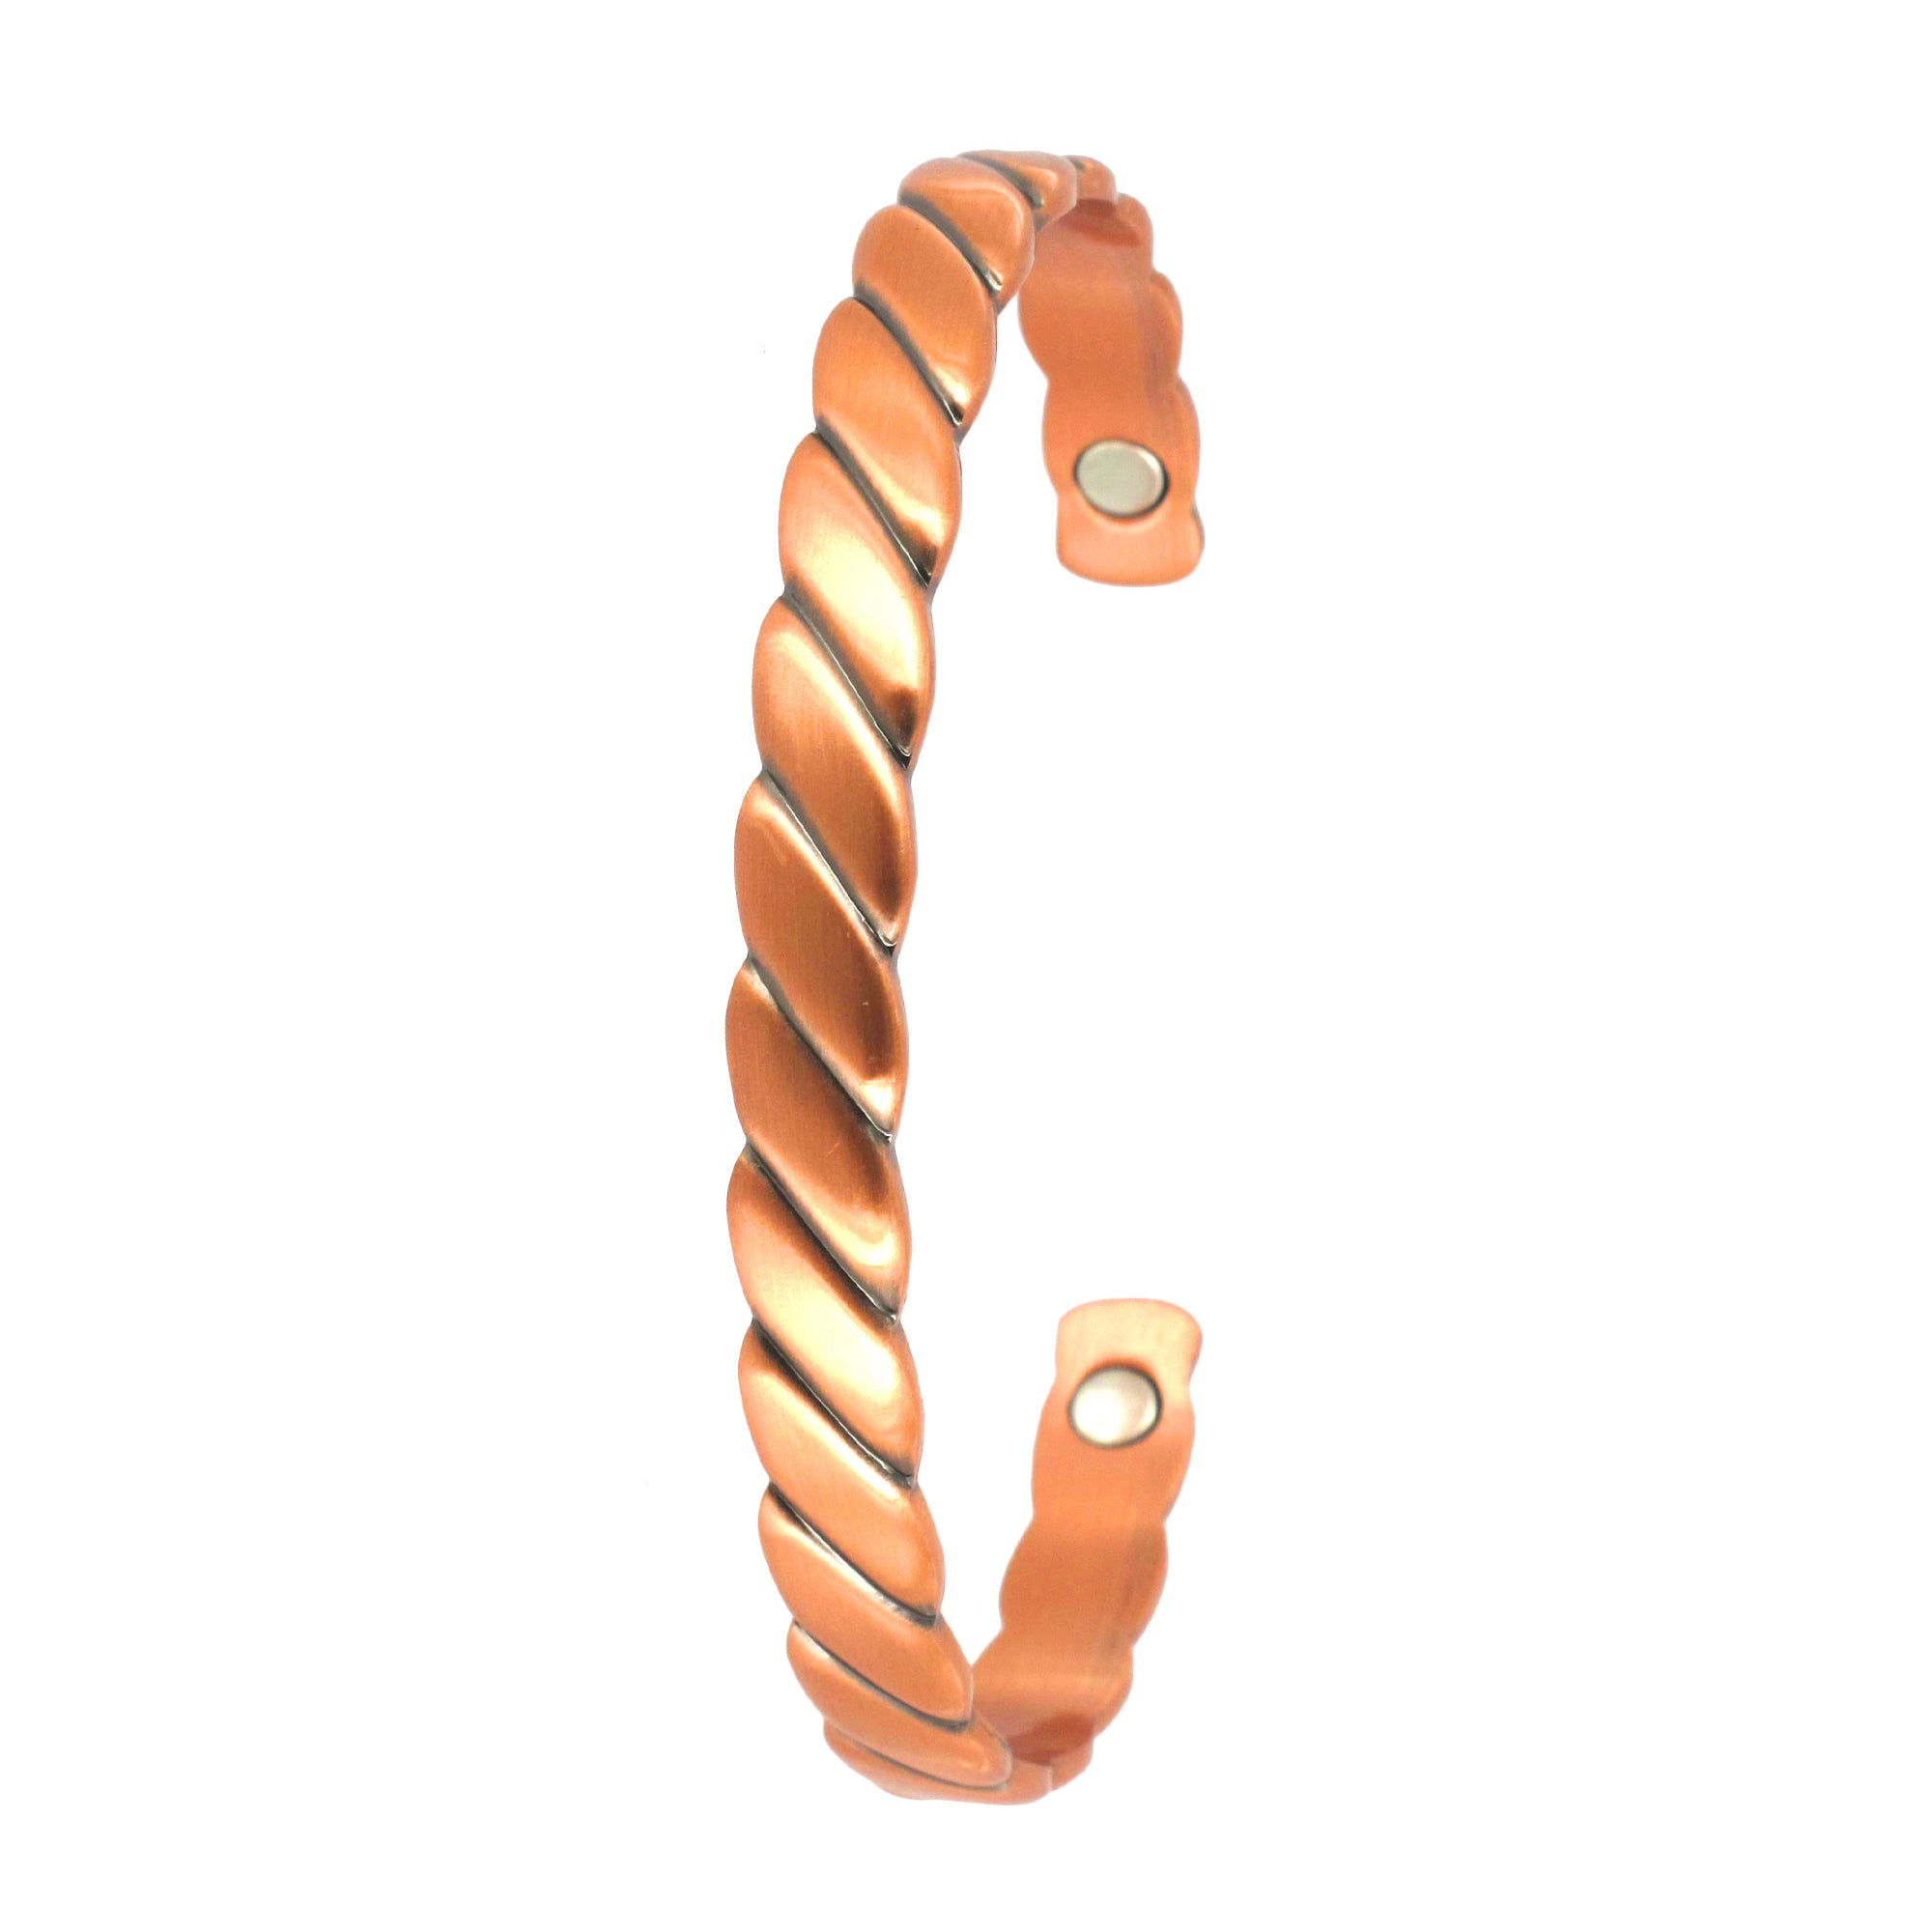 Copper Bracelet - Rope Twist